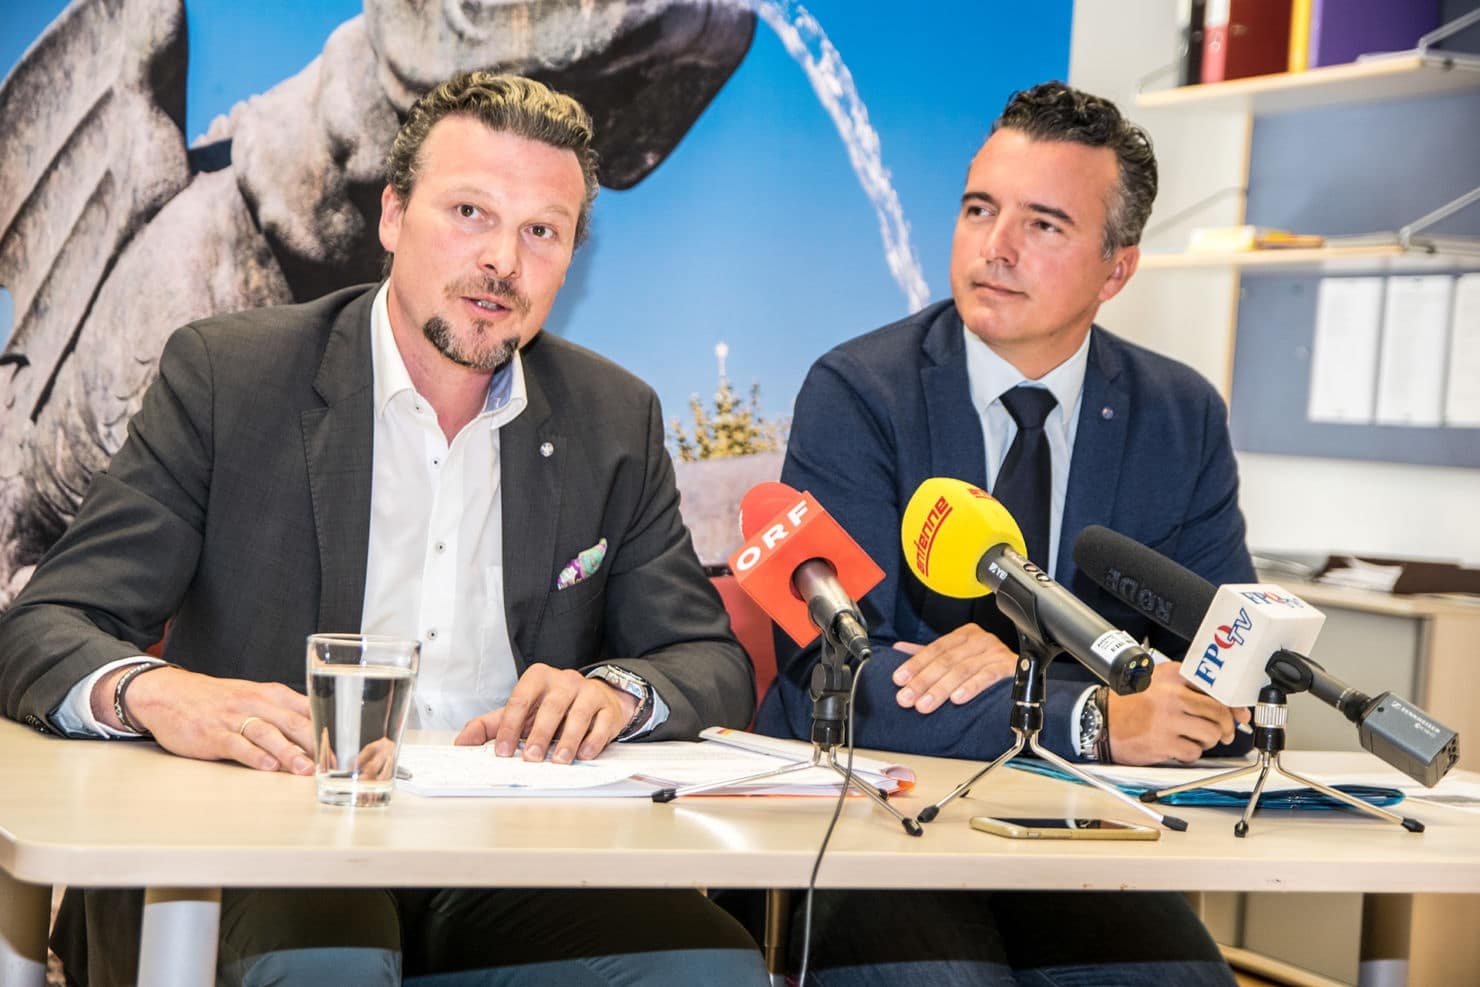 FPÖ Stadtrat Germ und FPÖ Landesparteiobmann Darmann bei der Pressekonferenz am Montag Vormittag.